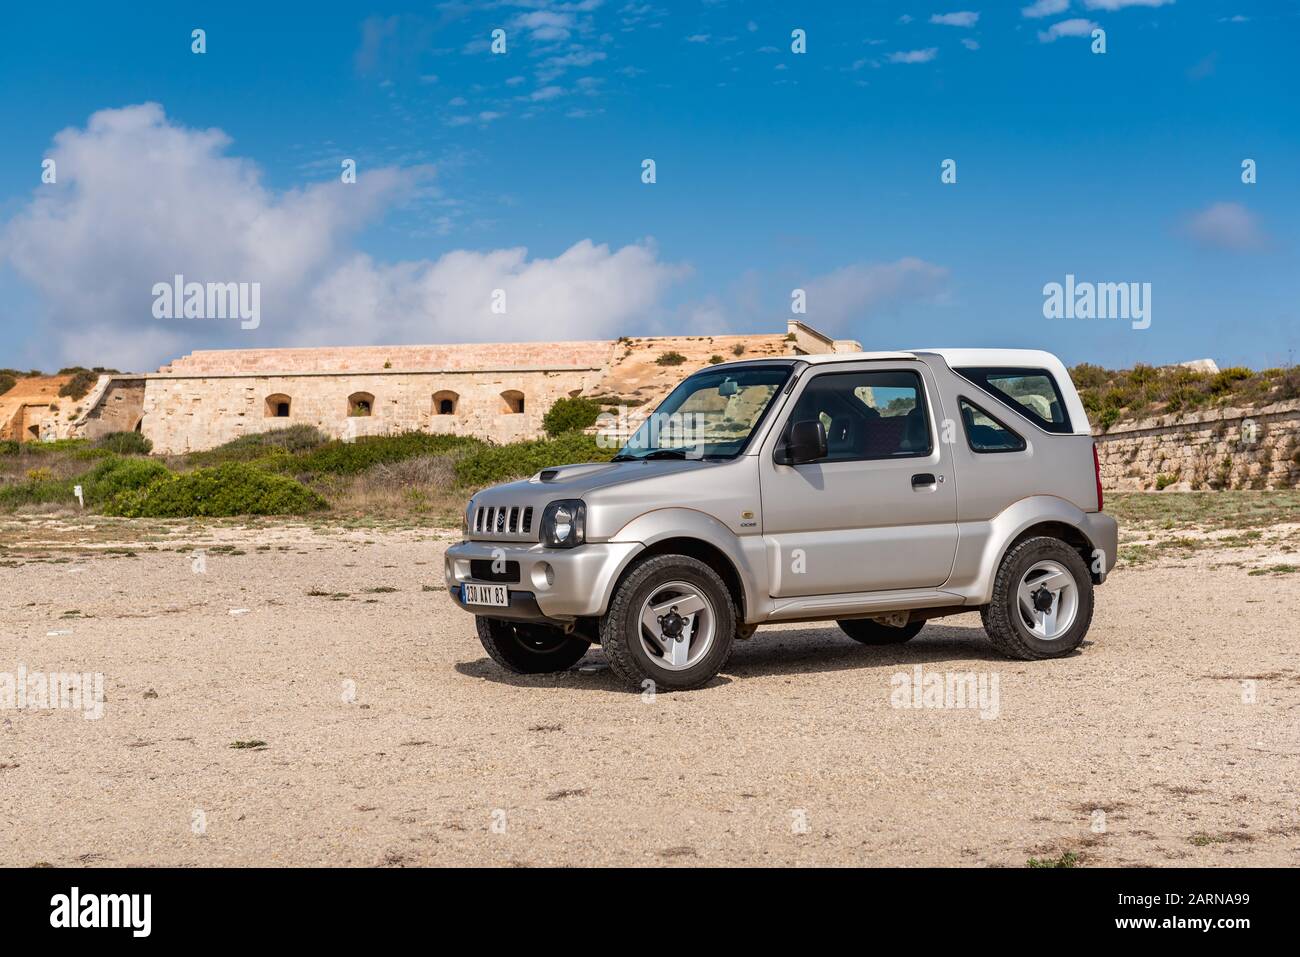 Mallorca, Spain - October 13, 2019: Suzuki Jimny 4x4 car parked on the coast of Menorca island. Stock Photo